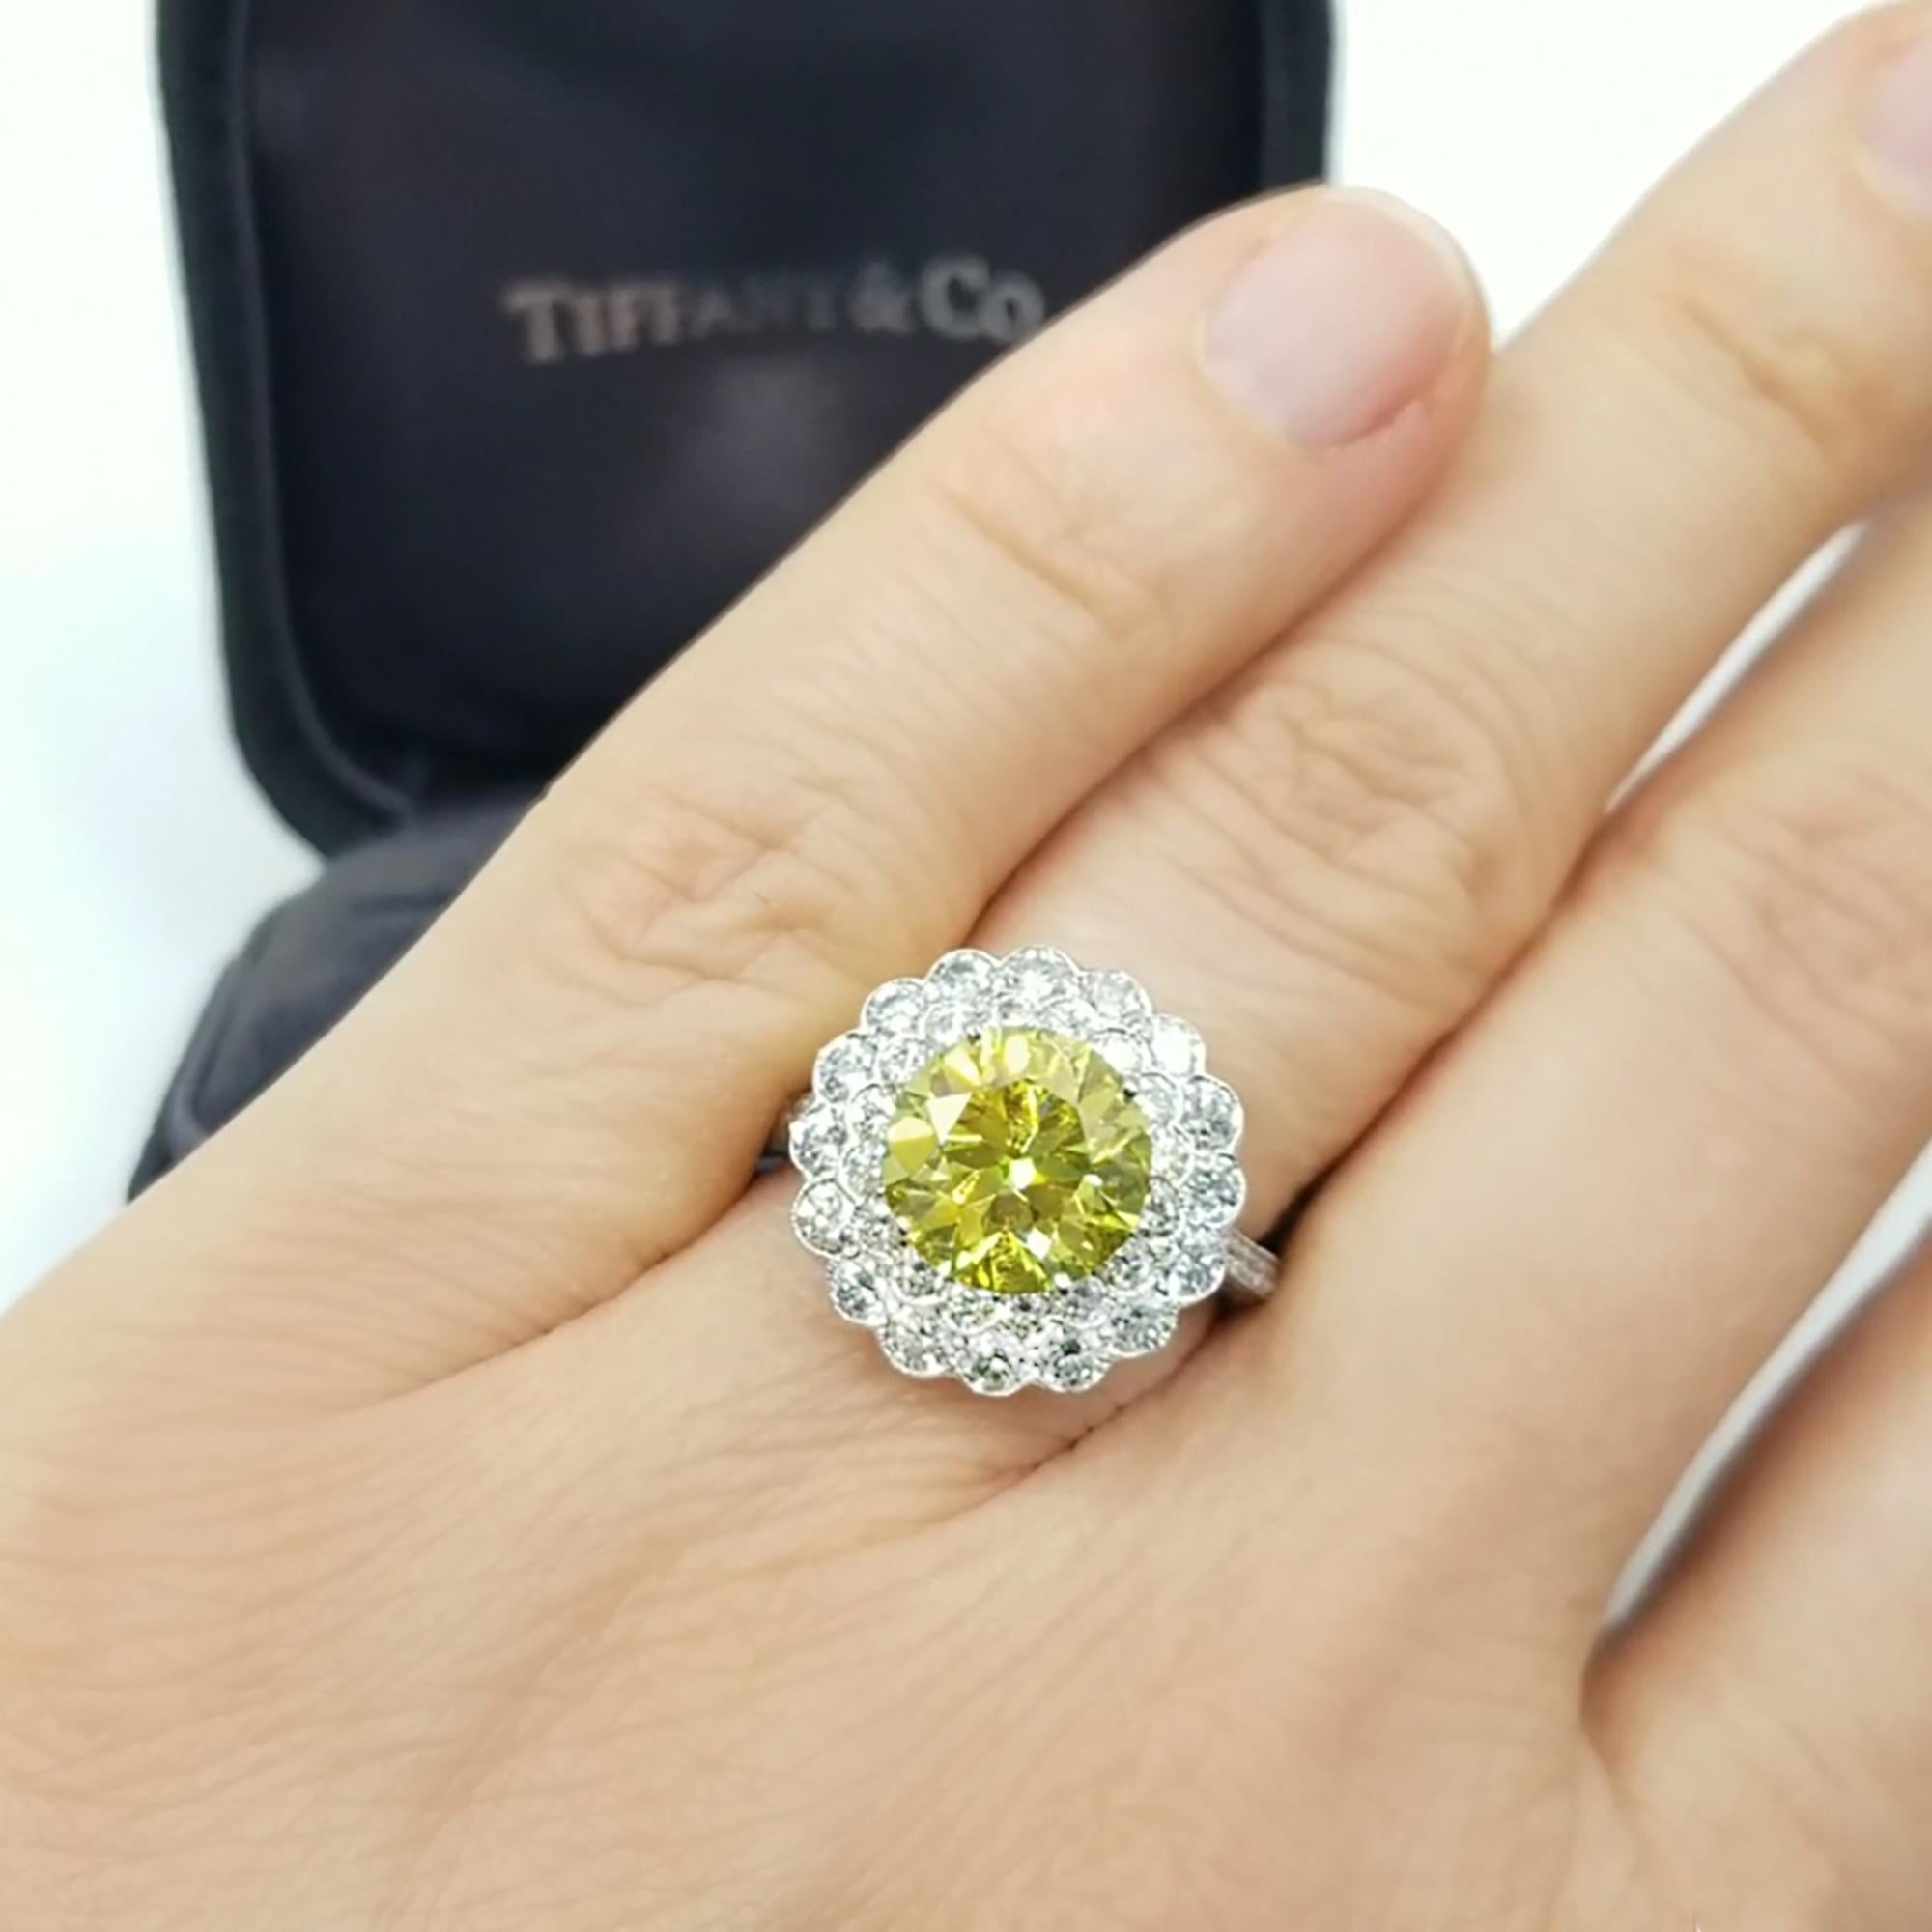 Tiffany & Co. G.I.A. Fancy Vivid Yellow Diamond Ring